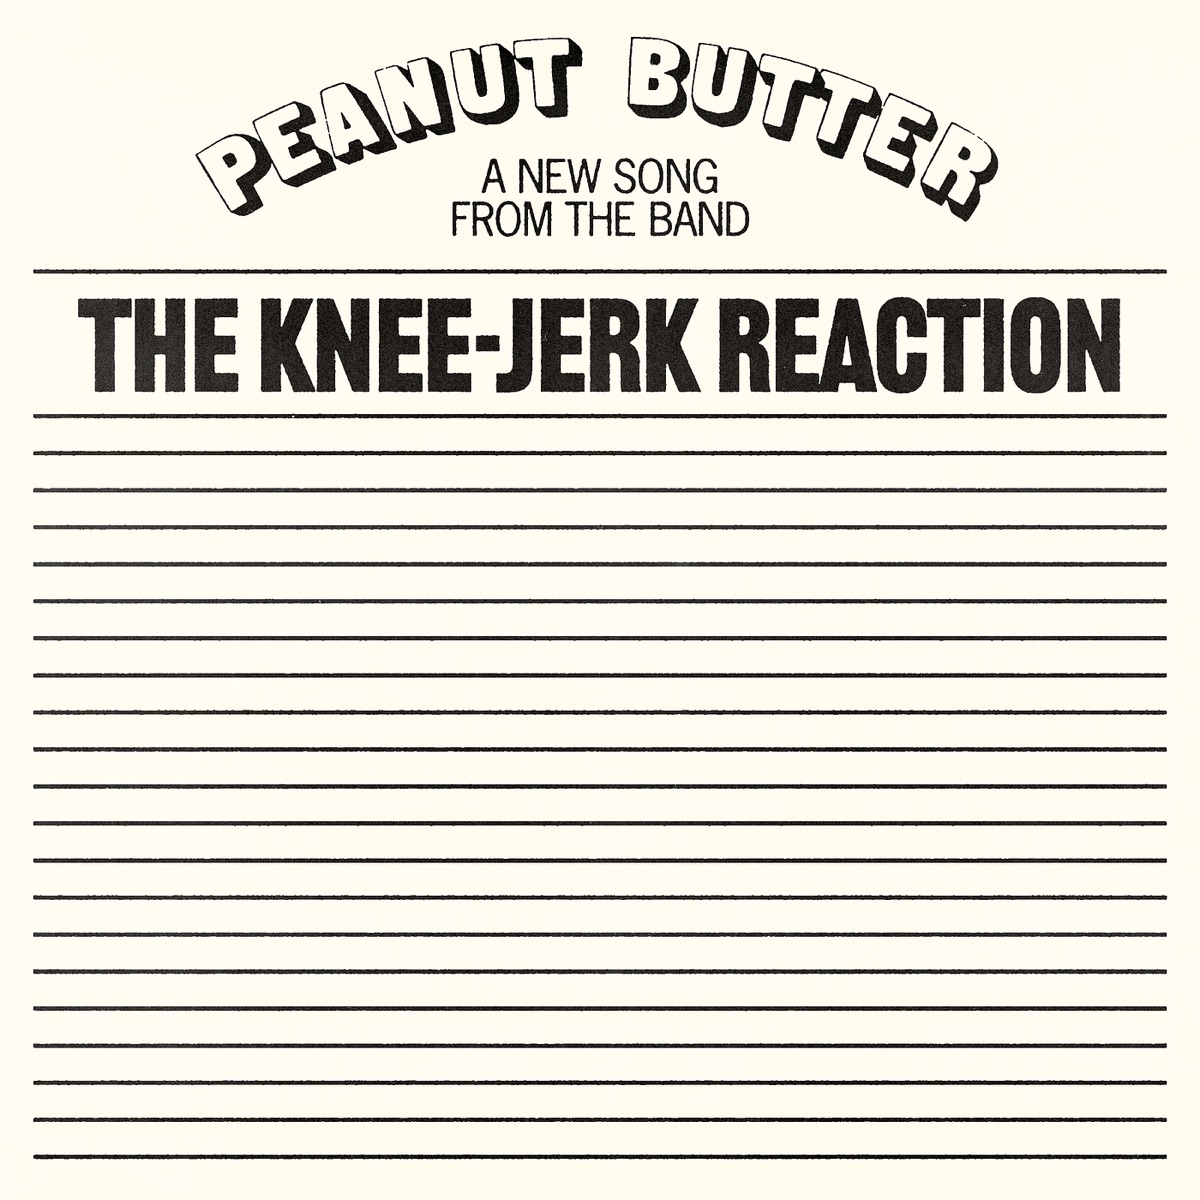 Knee Jerk Reactions